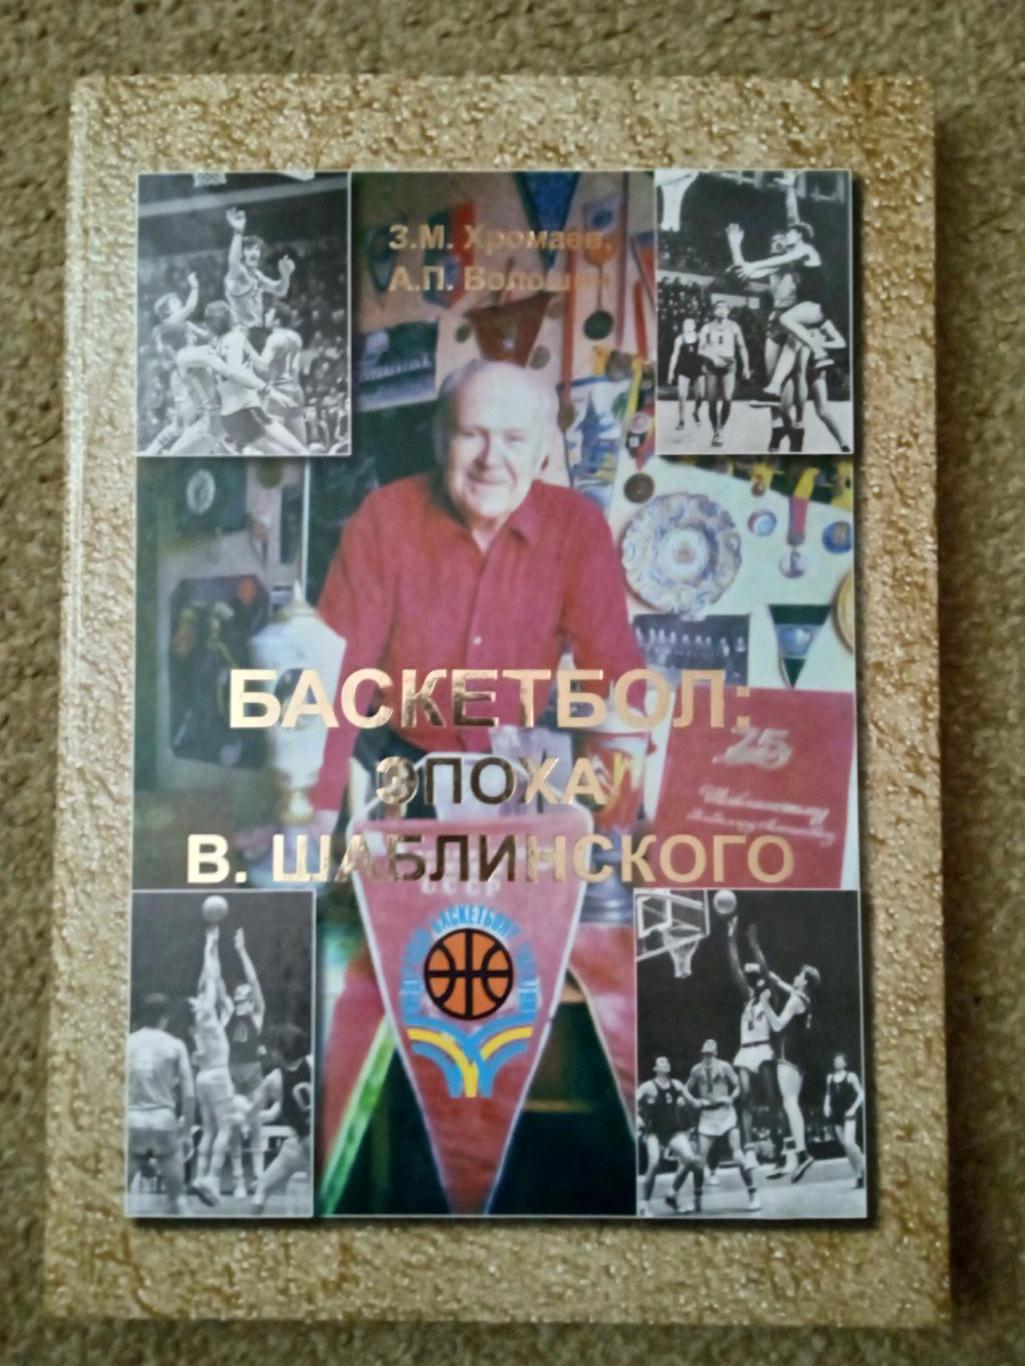 Баскетбол:эпоха В.Шаблинского,изд-2007